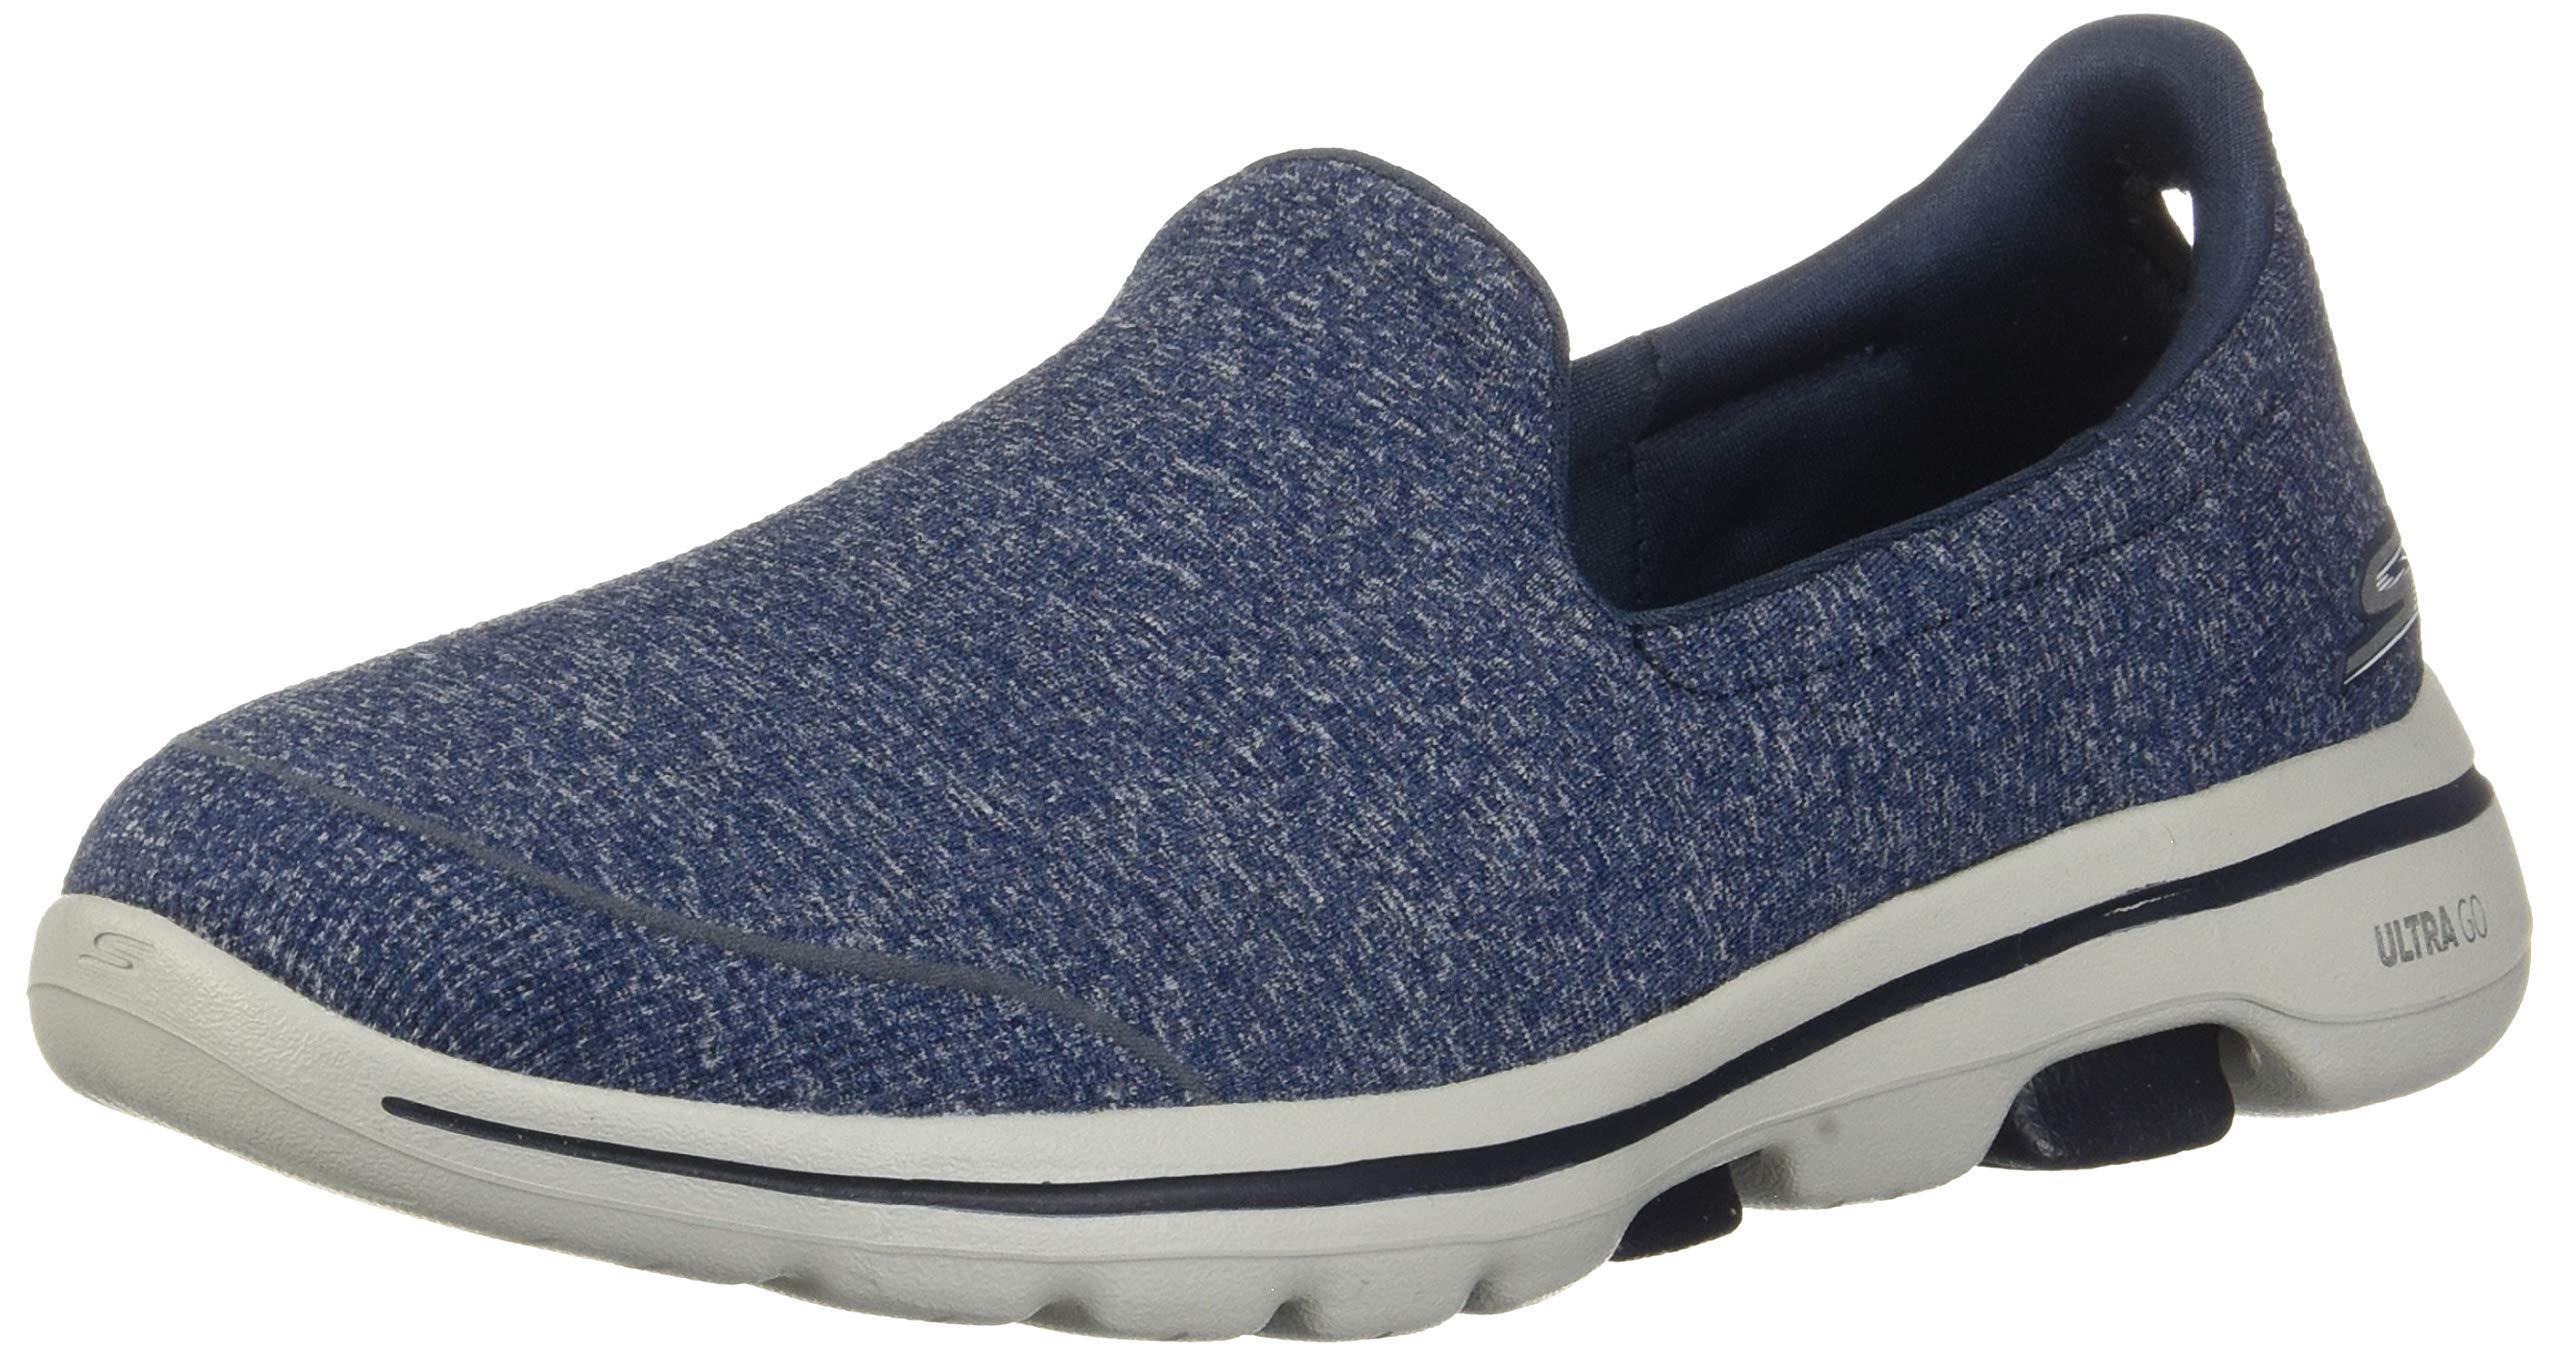 Skechers Go Walk 5-15932 Sneaker in Navy/Gray (Blue) - Lyst